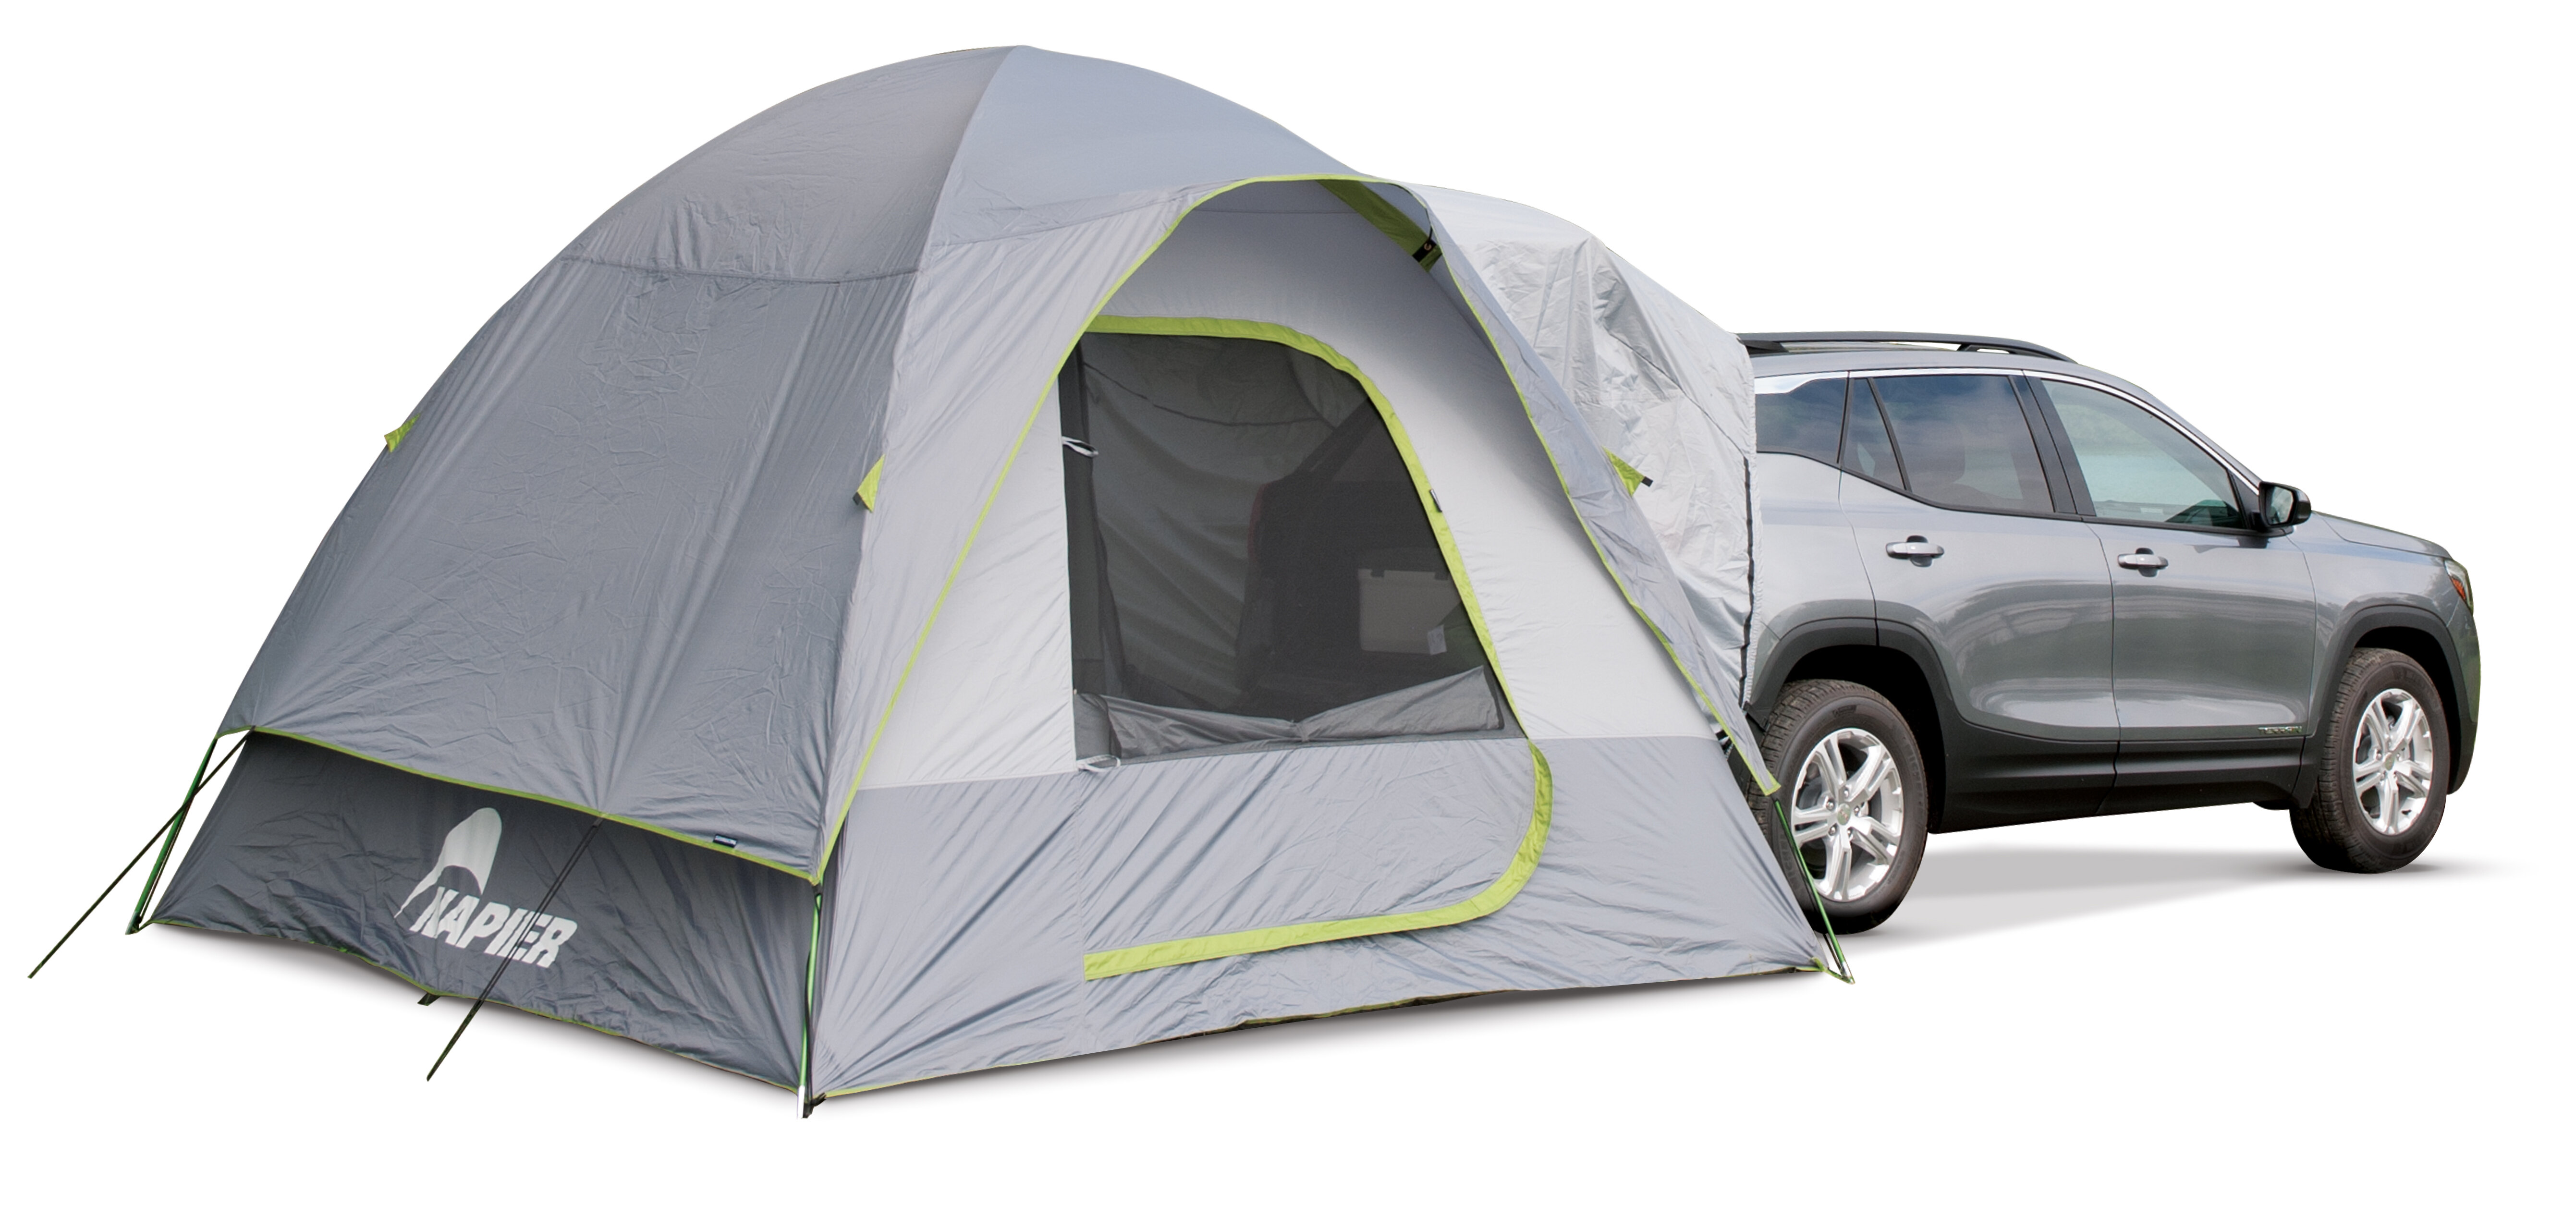 Backroadz 5 Person SUV Tent